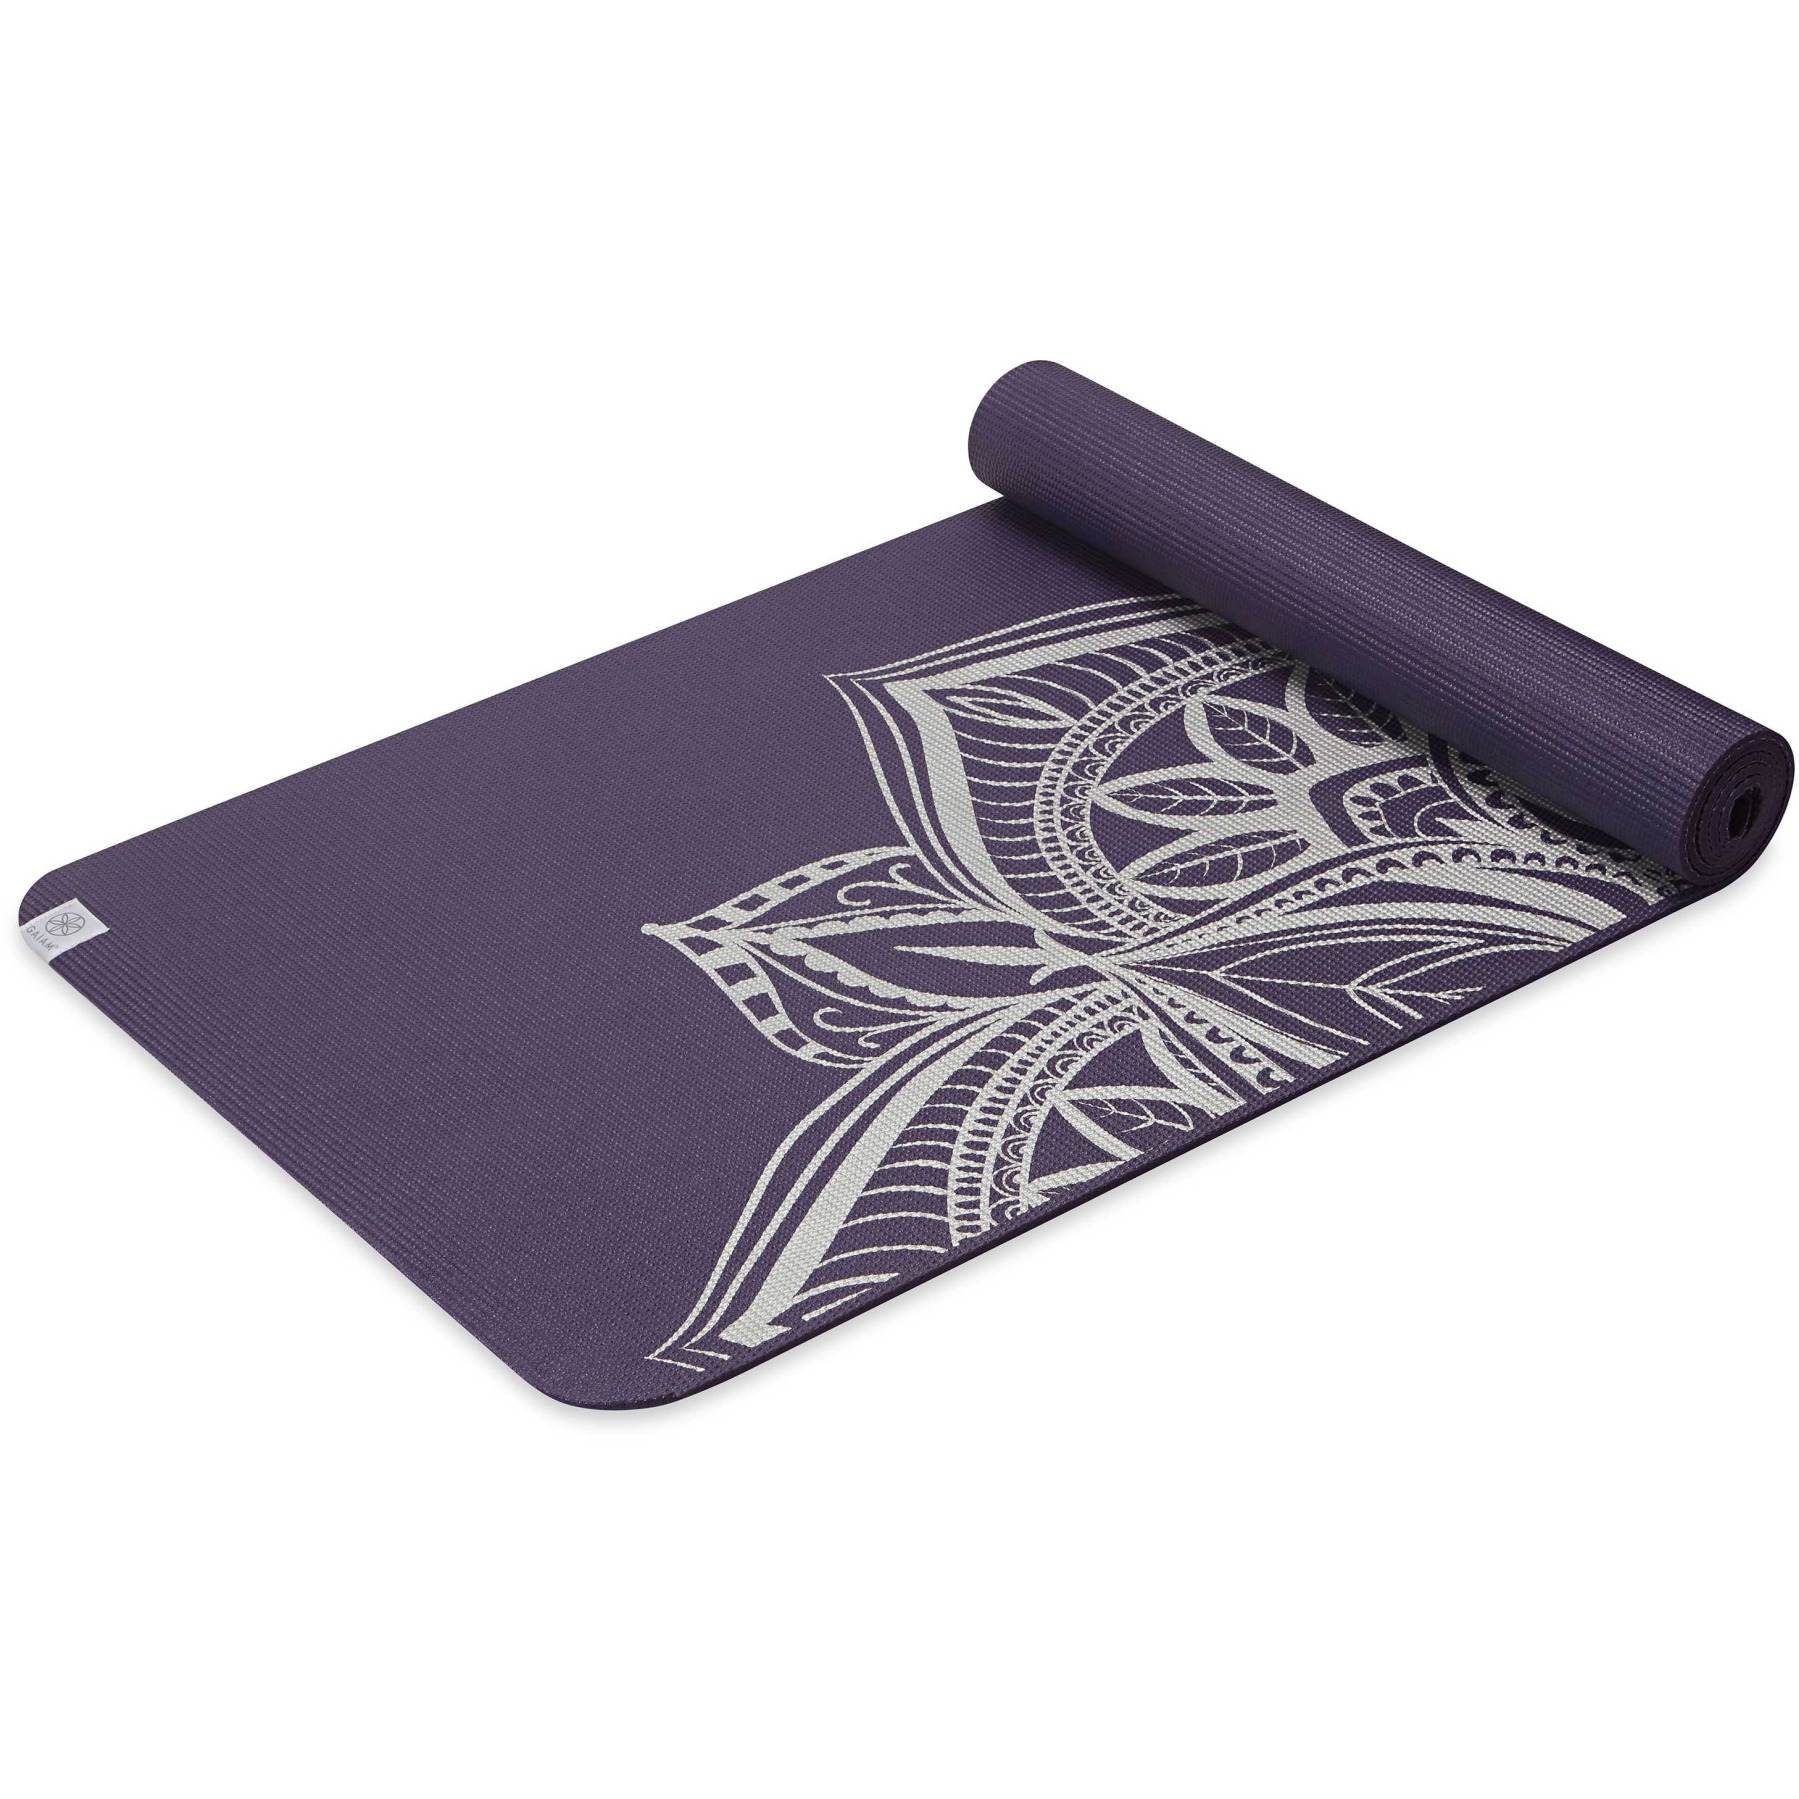 Productfoto van Gaiam Premium Metallic Yoga Mat (6mm) - Aubergine Medallion